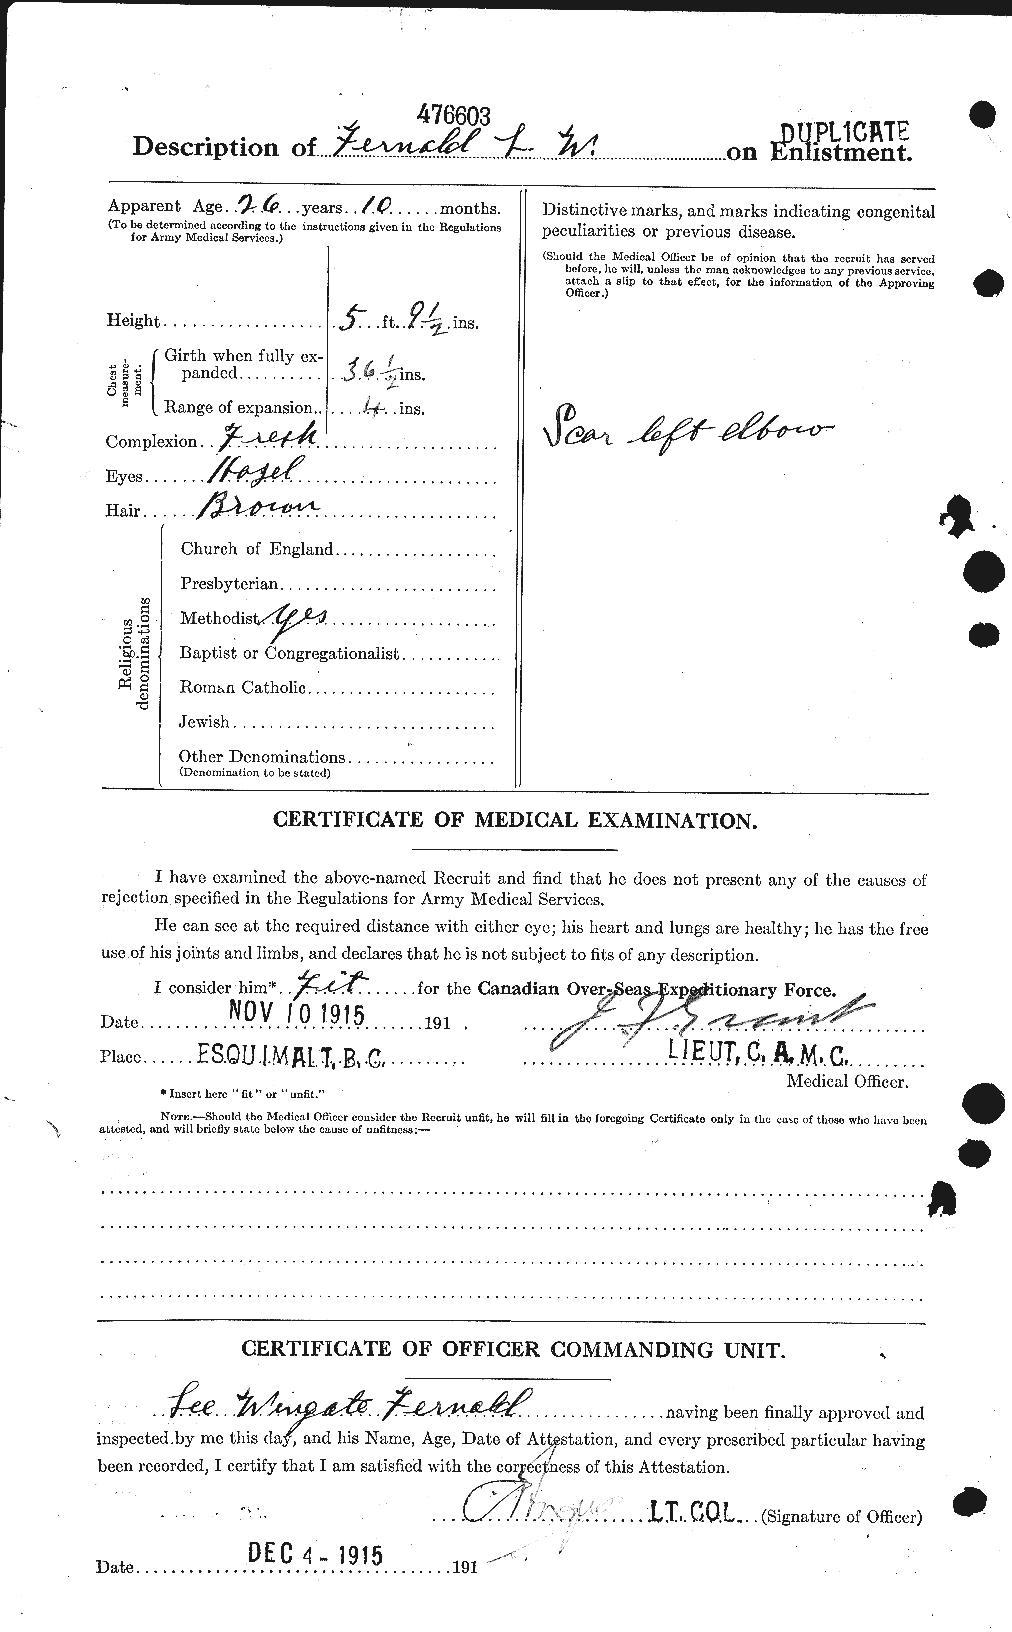 Dossiers du Personnel de la Première Guerre mondiale - CEC 323565b